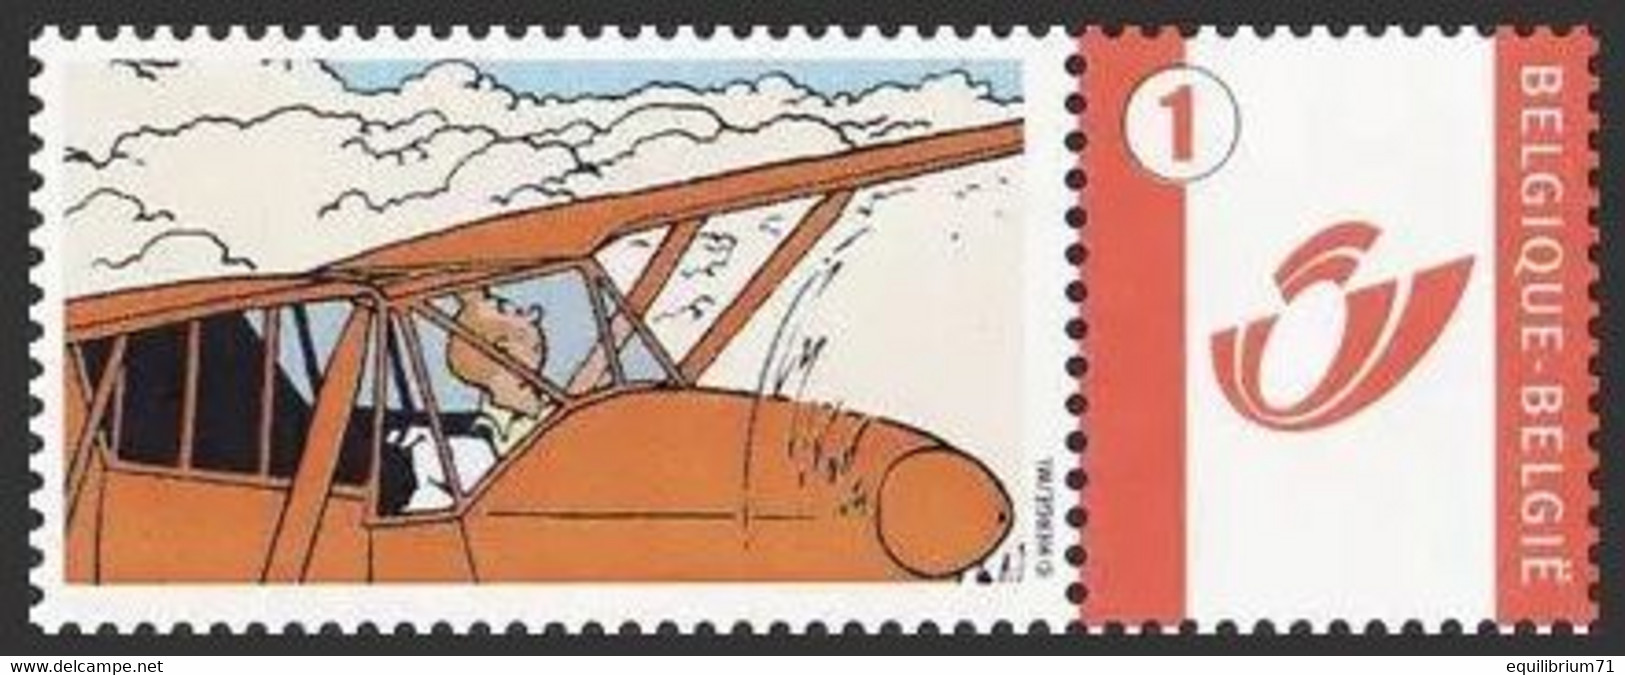 DUOSTAMP/MYSTAMP**  Tintin, Avion/Kuifje, Vliegtuig/Tim, Flugzeug/Tintin, Airplane - (Hergé) - Sous Blister/Verpakt - Philabédés (comics)